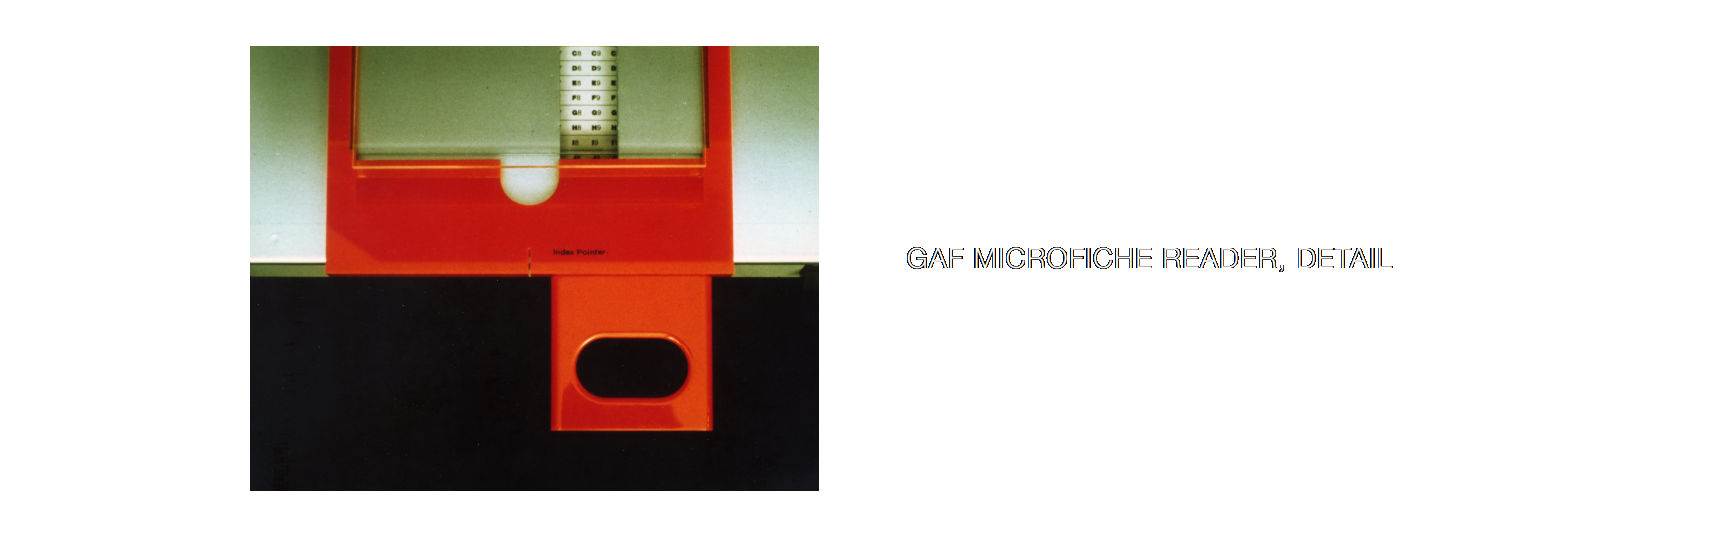 GAF Microfiche Reader, detail